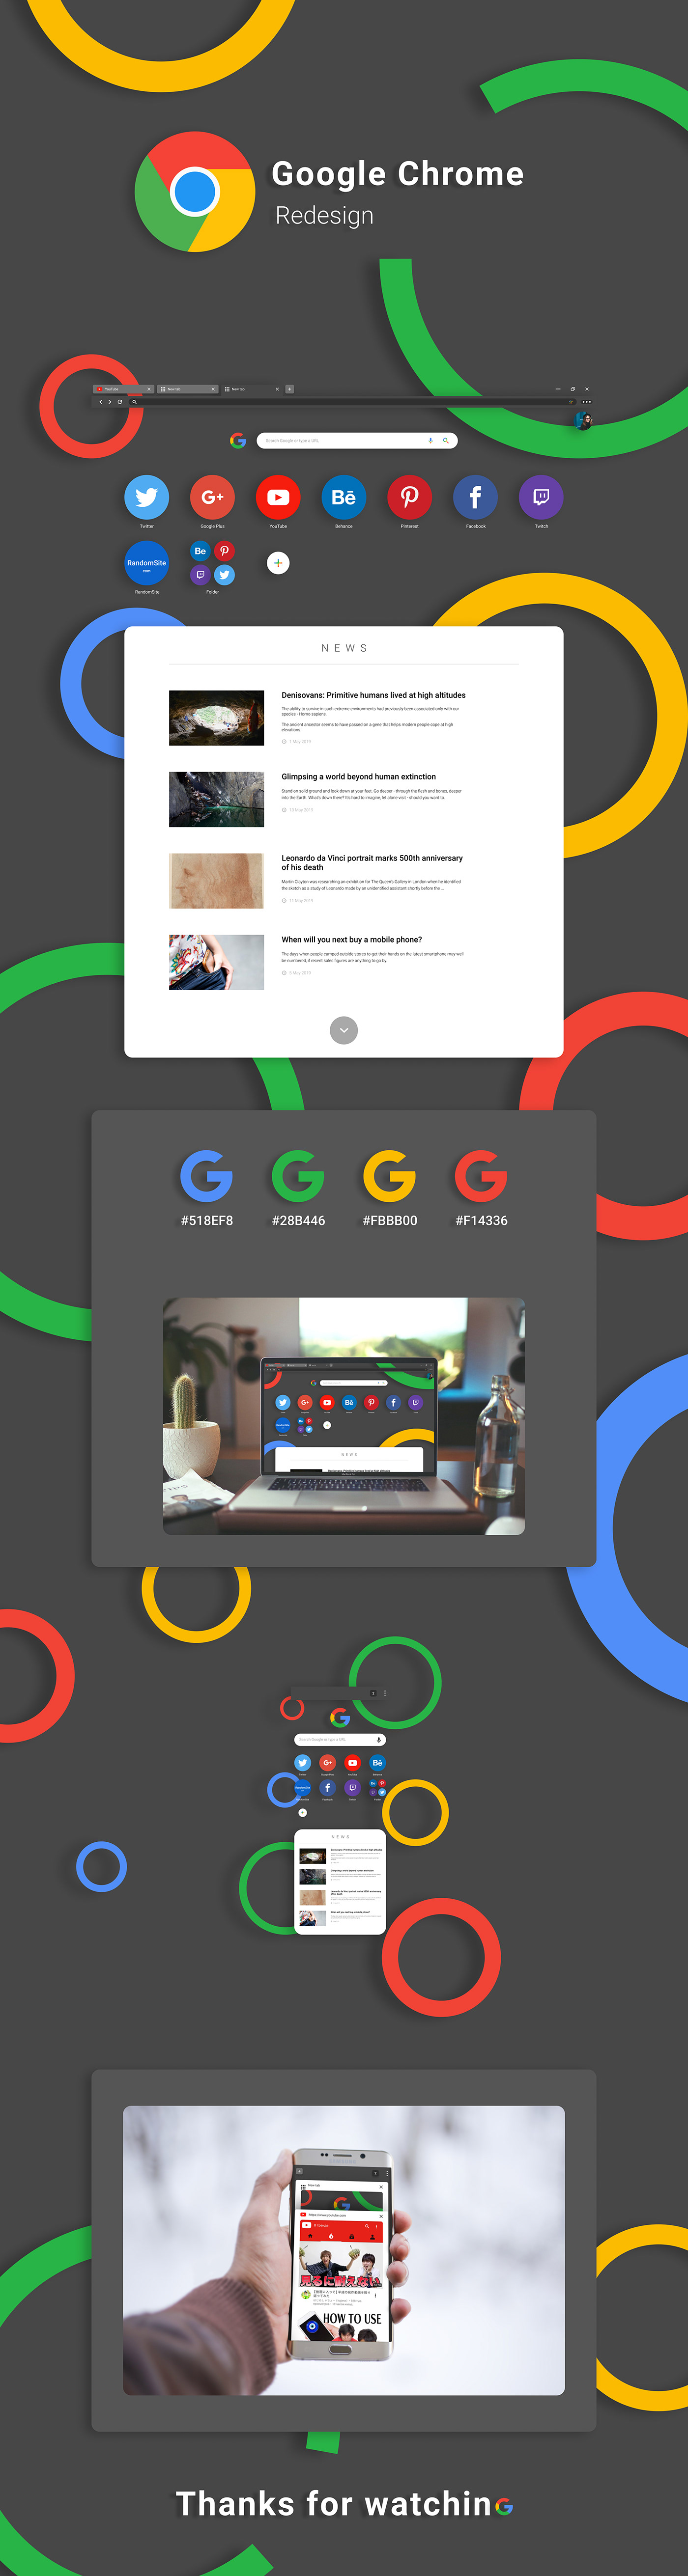 google google redesign GOOGLE CHROME chrome redesign redesign